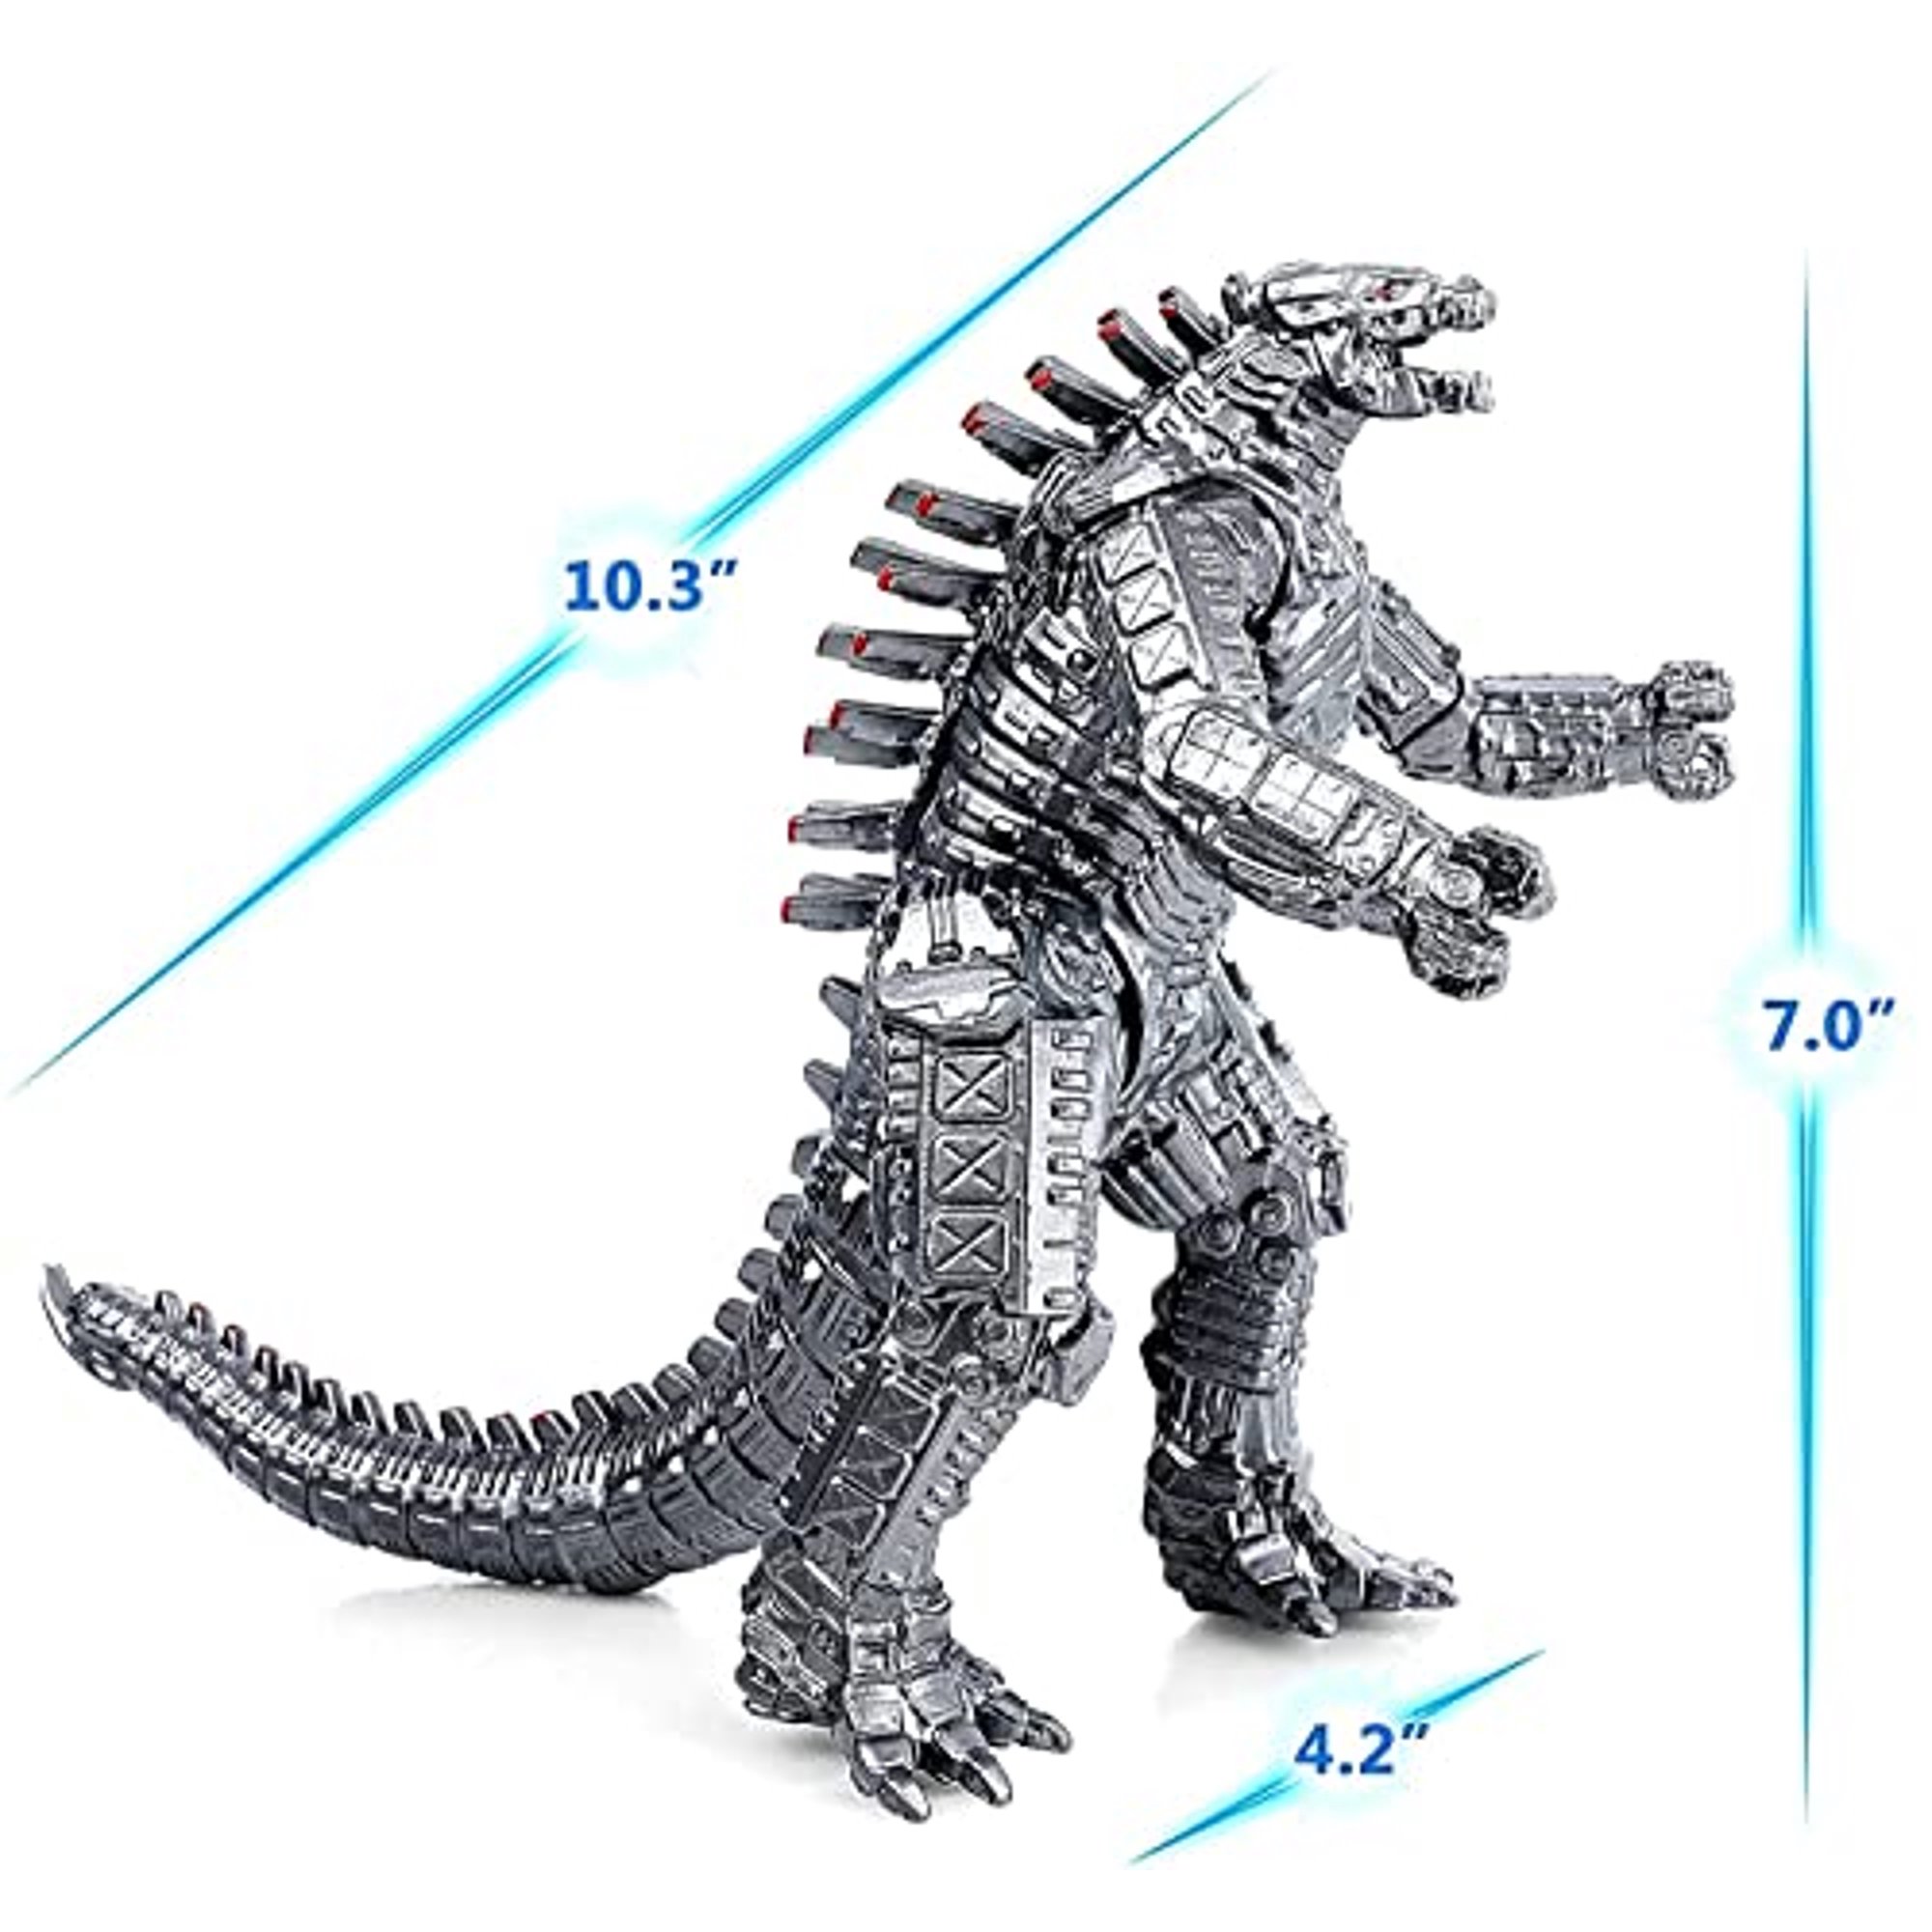 Godzilla: El rey de los monstruos - 4K UHD Blu-ray -Película